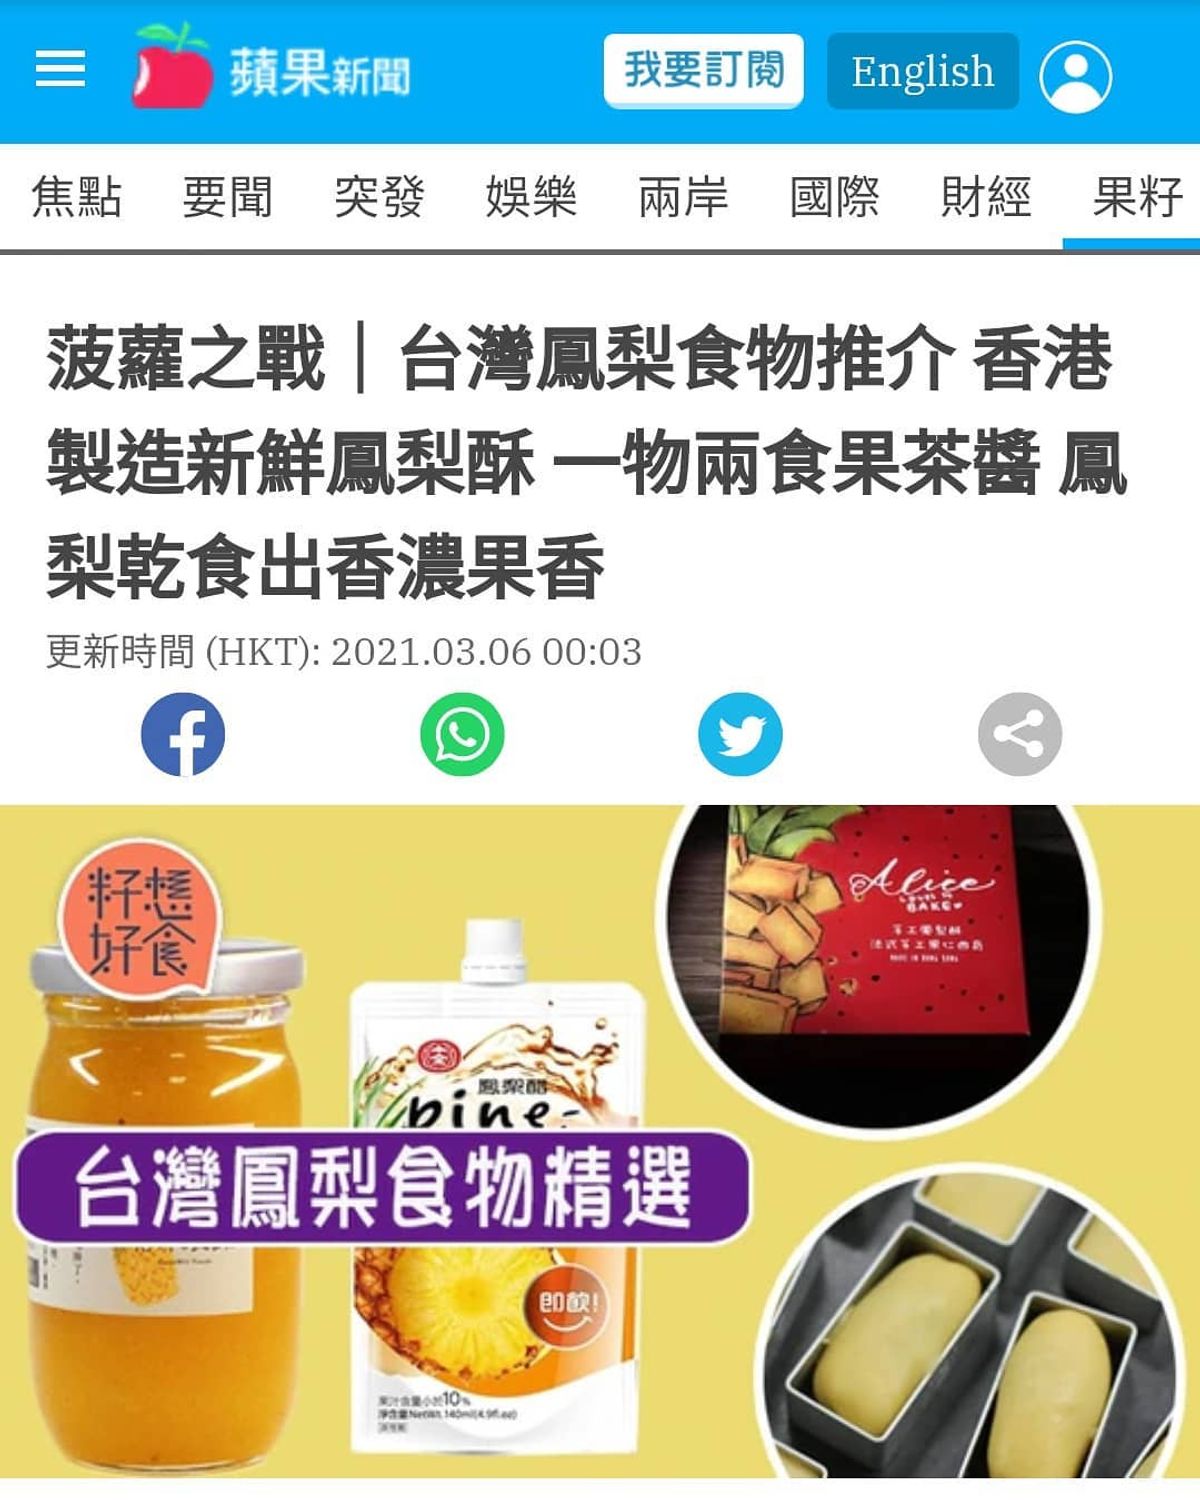 格外農品登上香港蘋果日報了